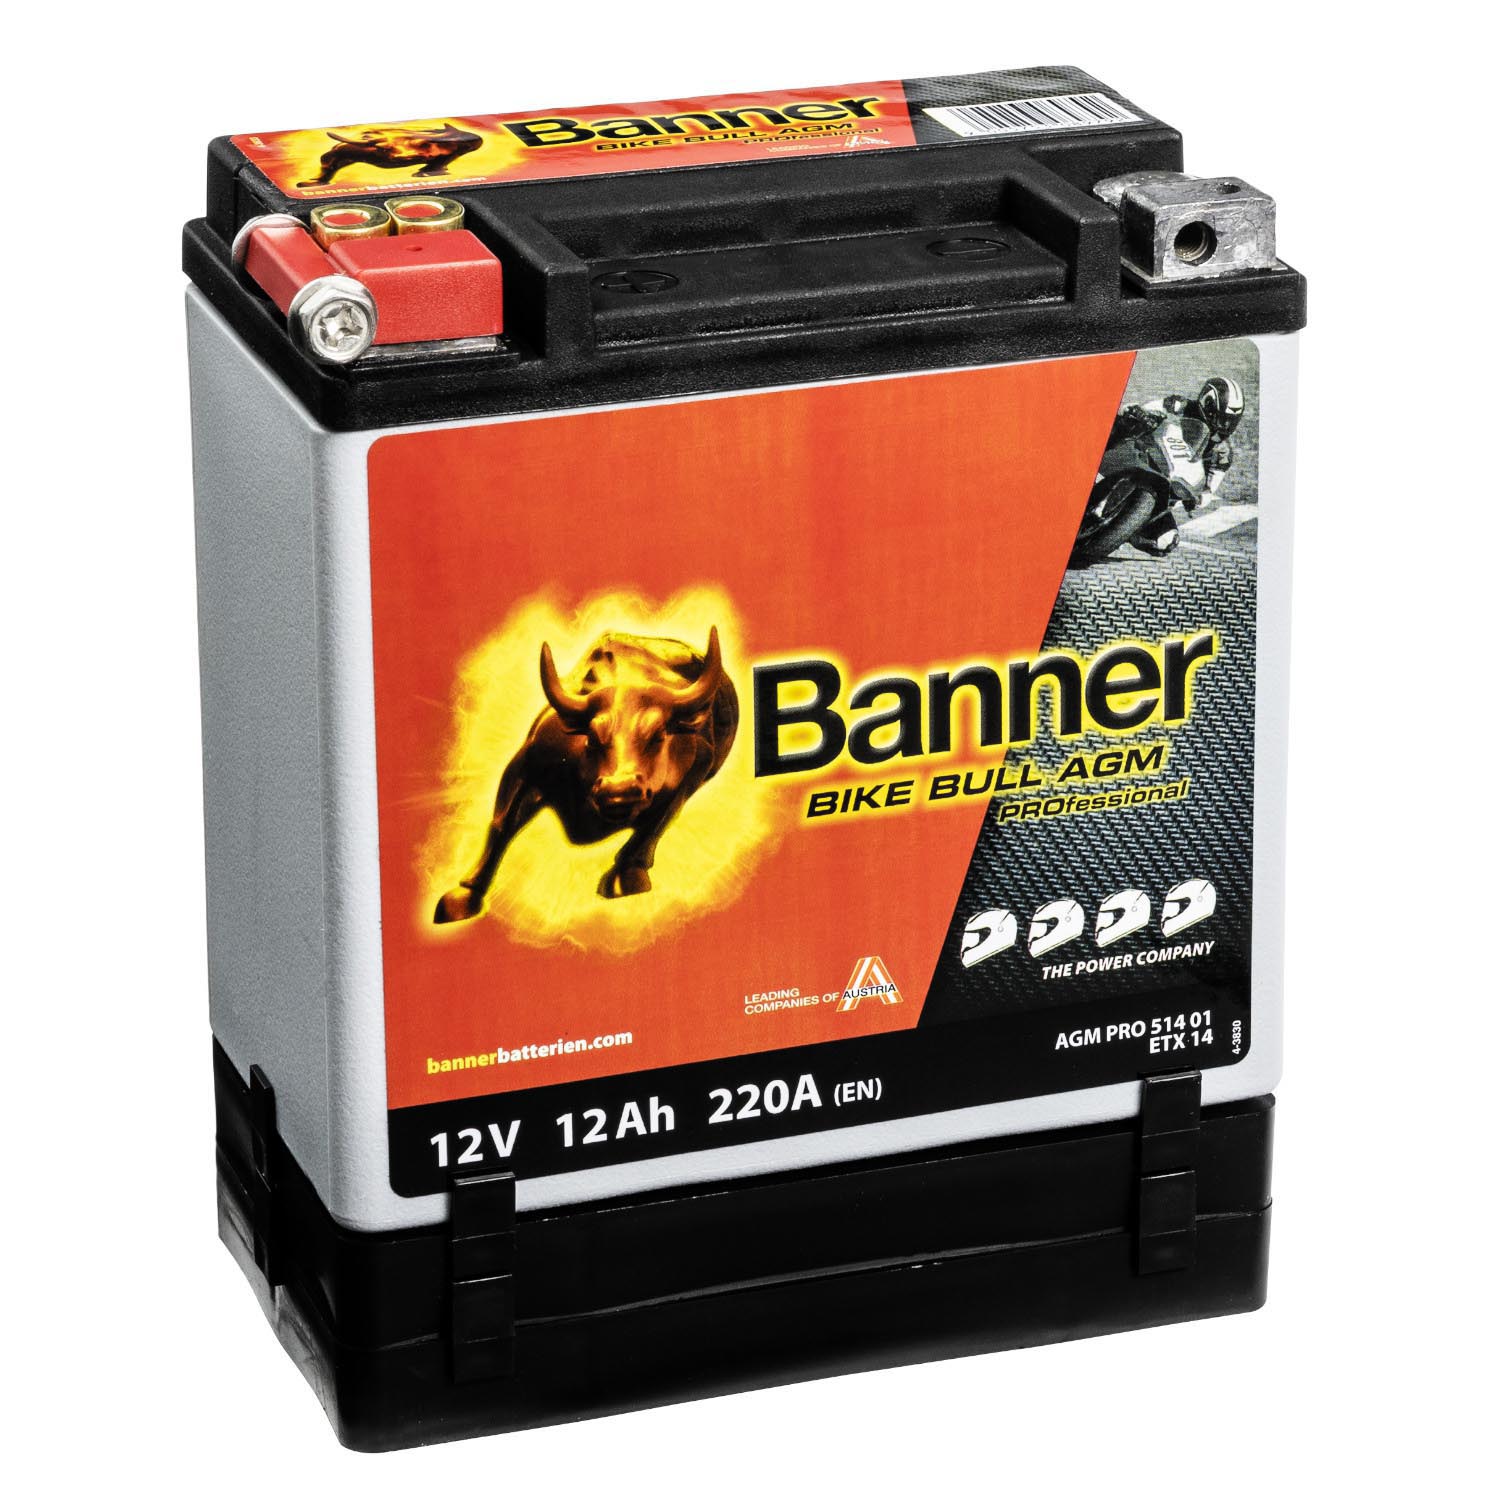 Banner AGM PRO Motorradbatterie 51401 BETX14 12V 12Ah